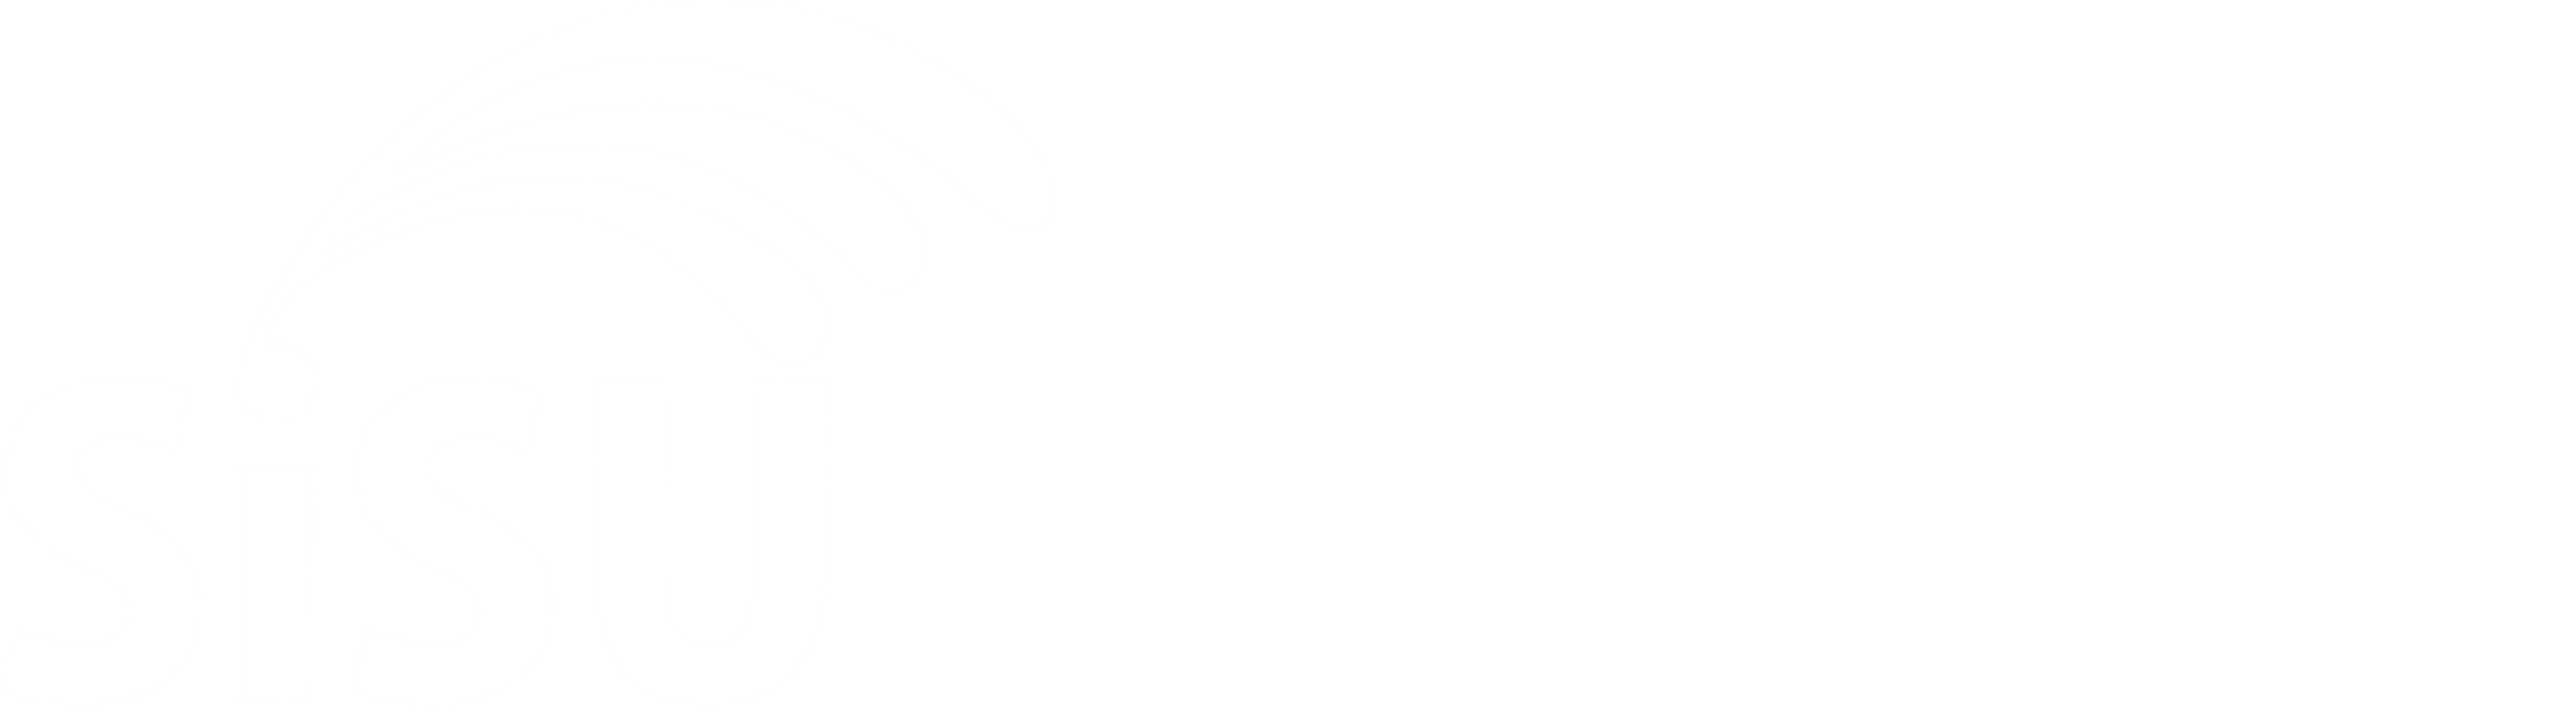 INSCRIÇÃO SISU 2023.2: que horas abre o Sisu 2023.2? Como funciona